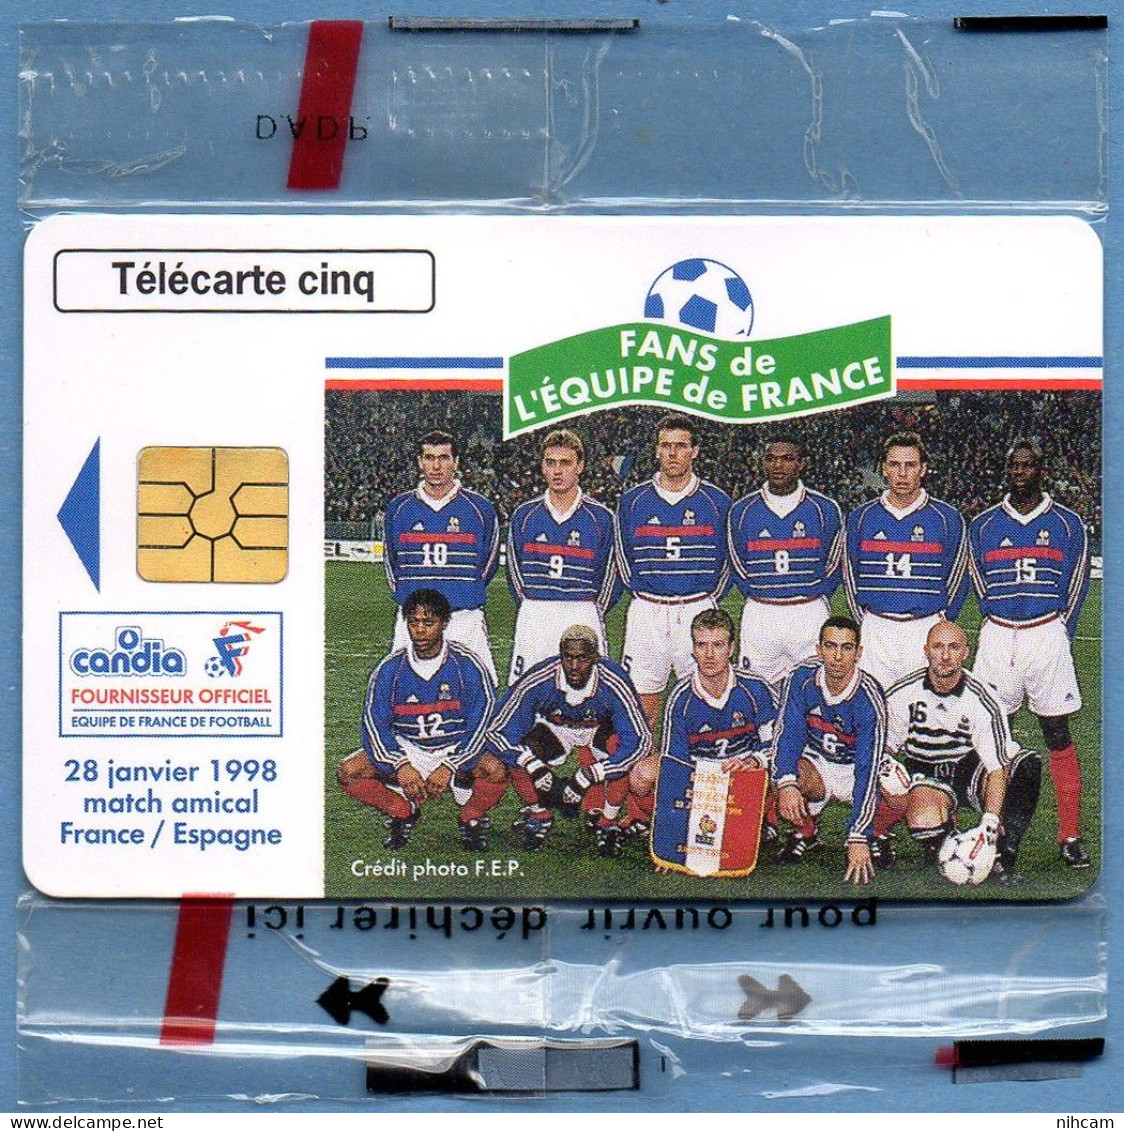 Télécarte France 5 U NSB Candia Equipe De France Football T2G 03/98 6500 Ex. Zidane Deschamps Bartez Thuram.... - 5 Unités